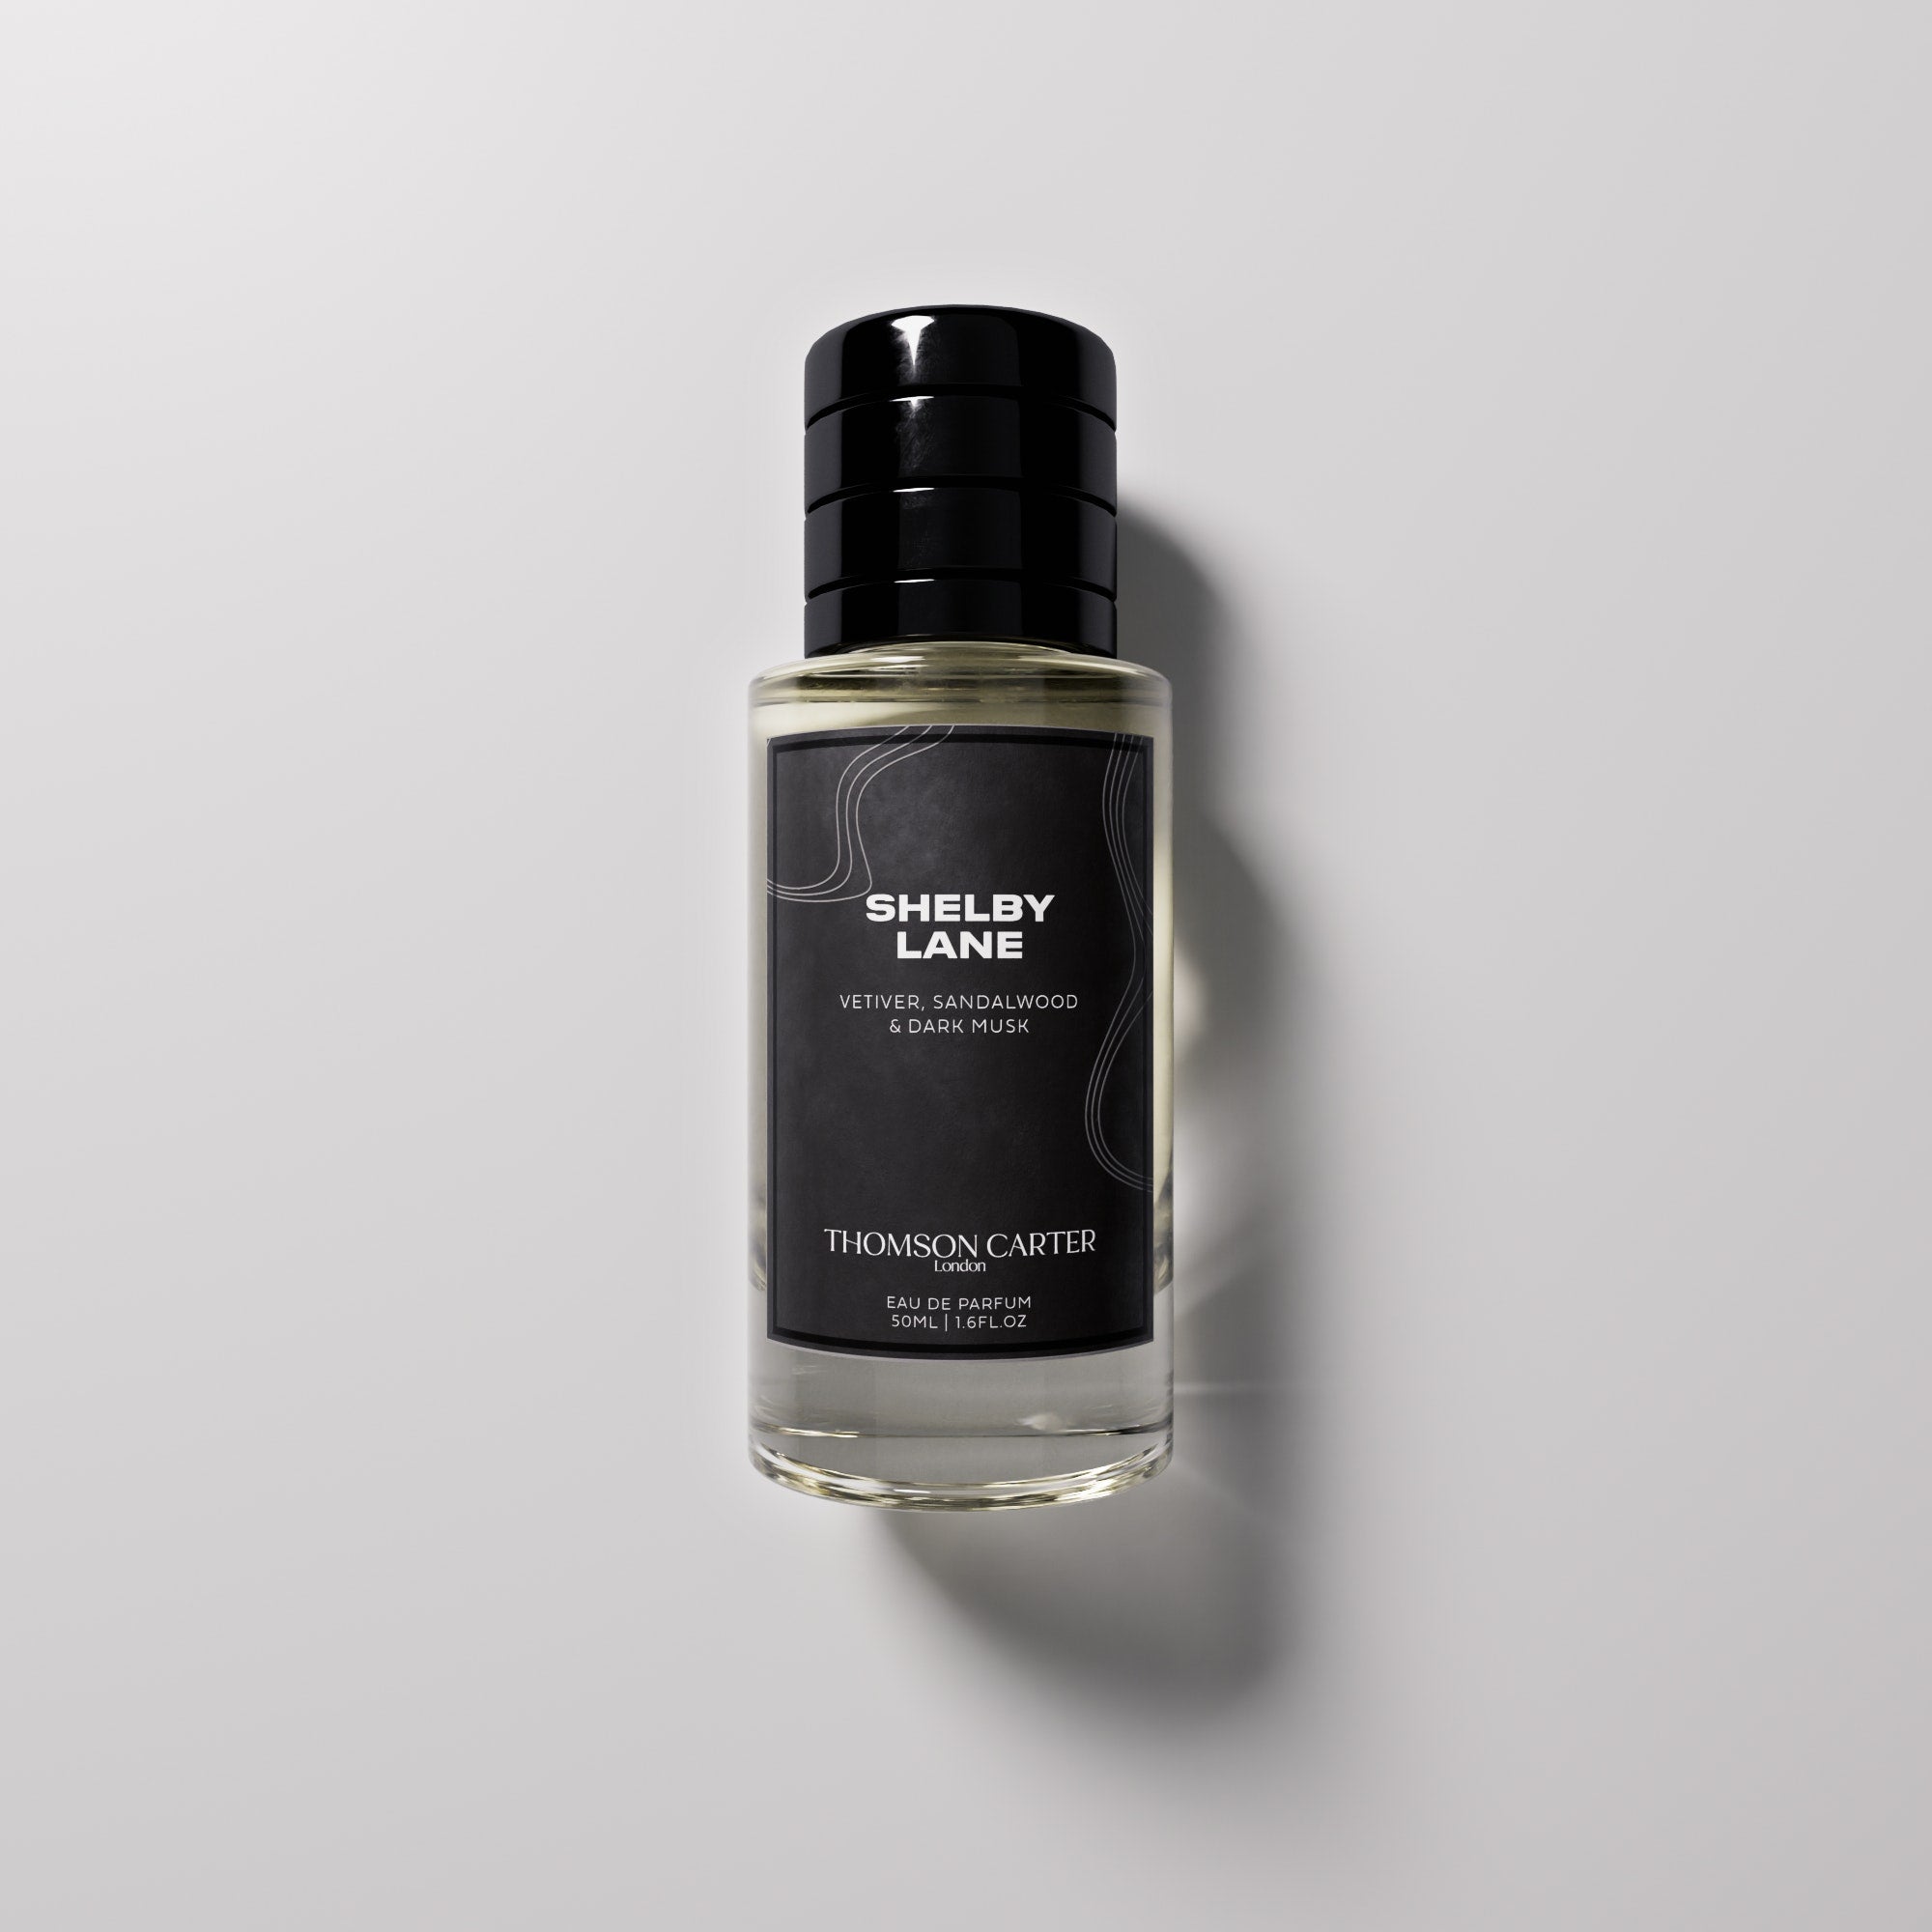 Fragrance – Thomson Carter